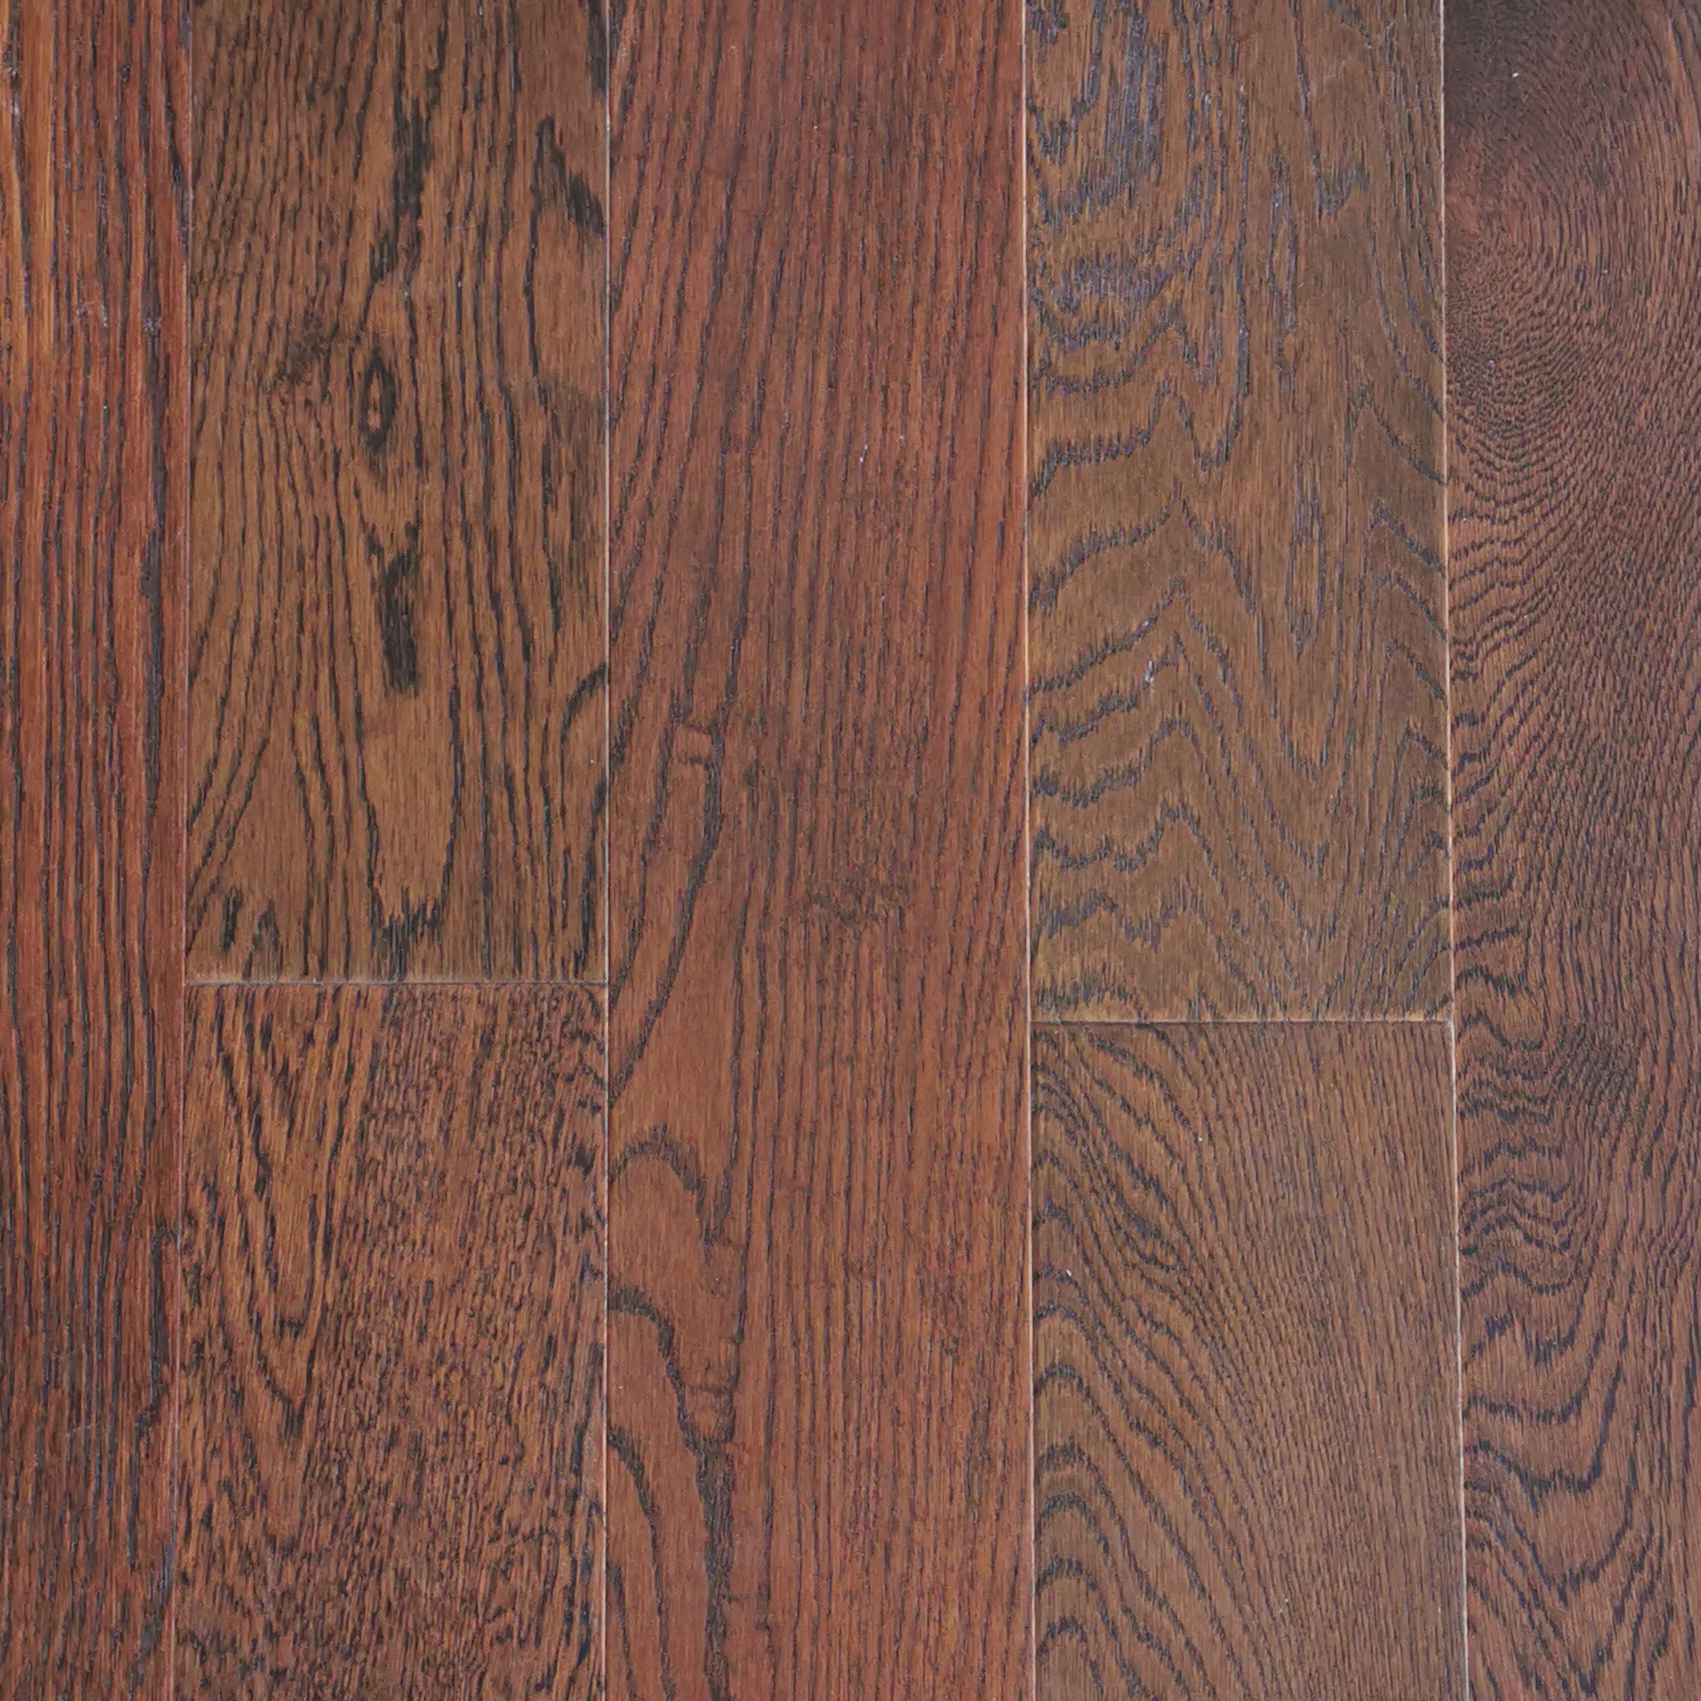 Discount wholesale Compressed Wood Flooring -
 Red Oak Wood Veneer SPC Flooring – Kangton